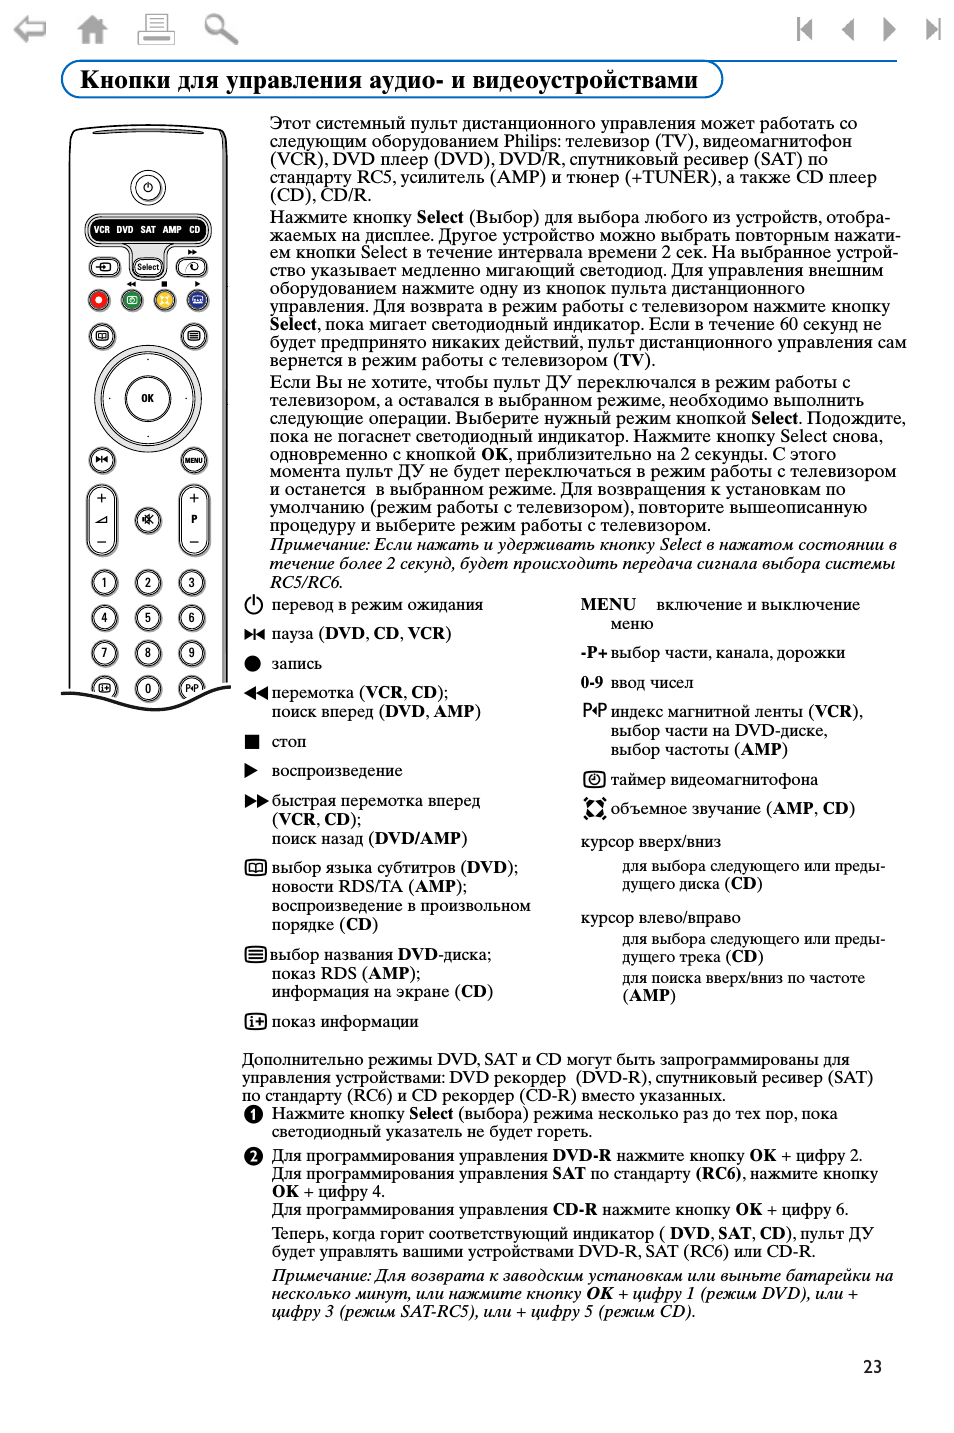 Как настроить универсальный пульт к телевизору филипс: коды, инструкция